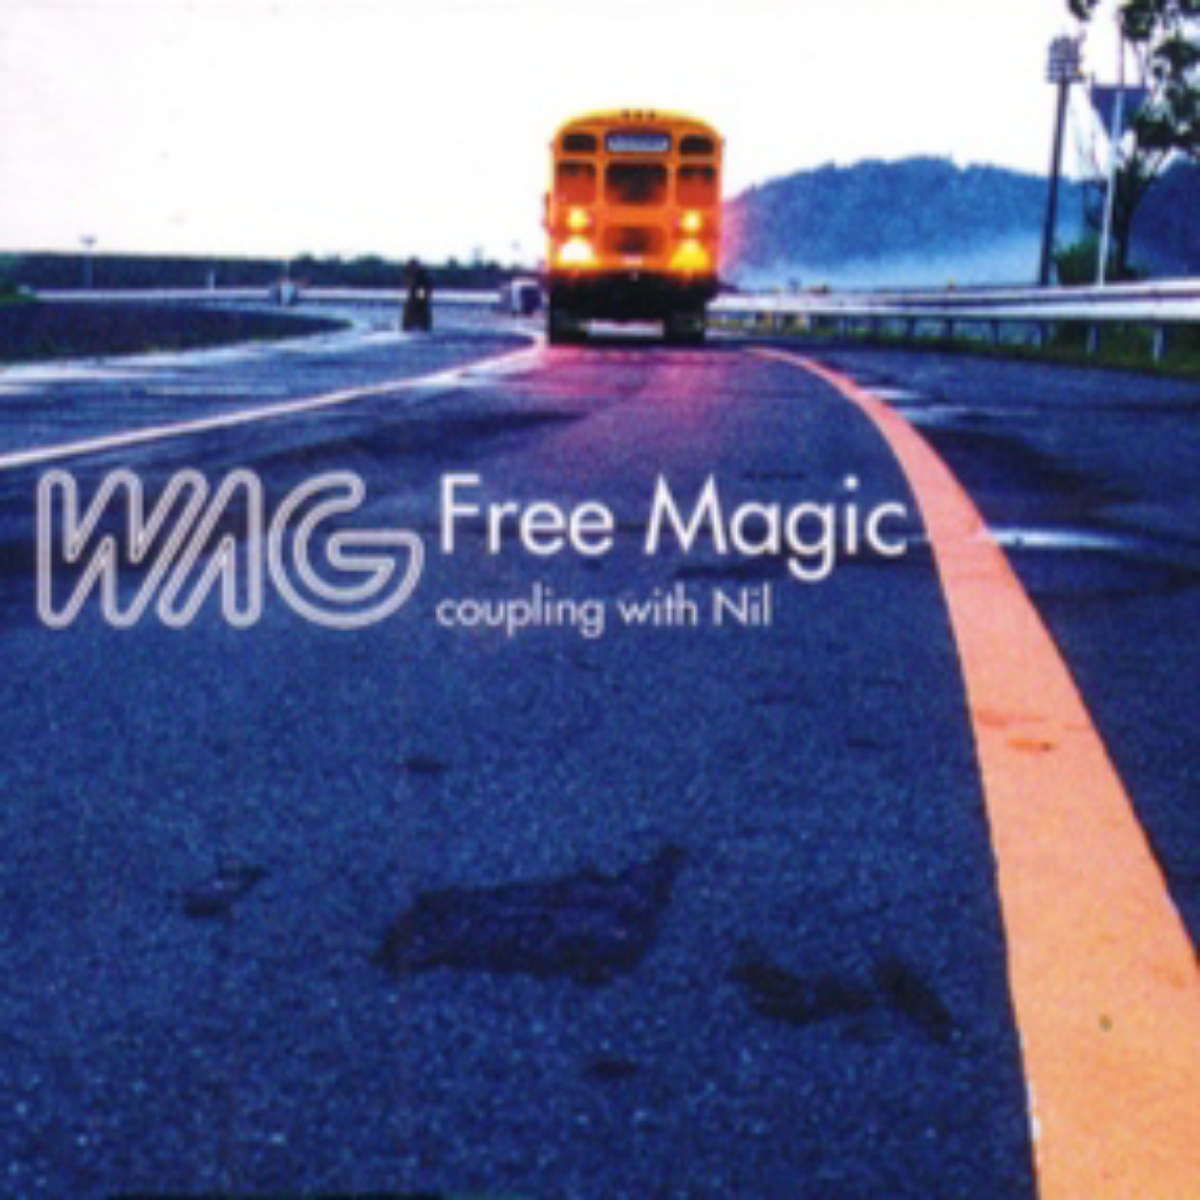 WAG - Free Magic